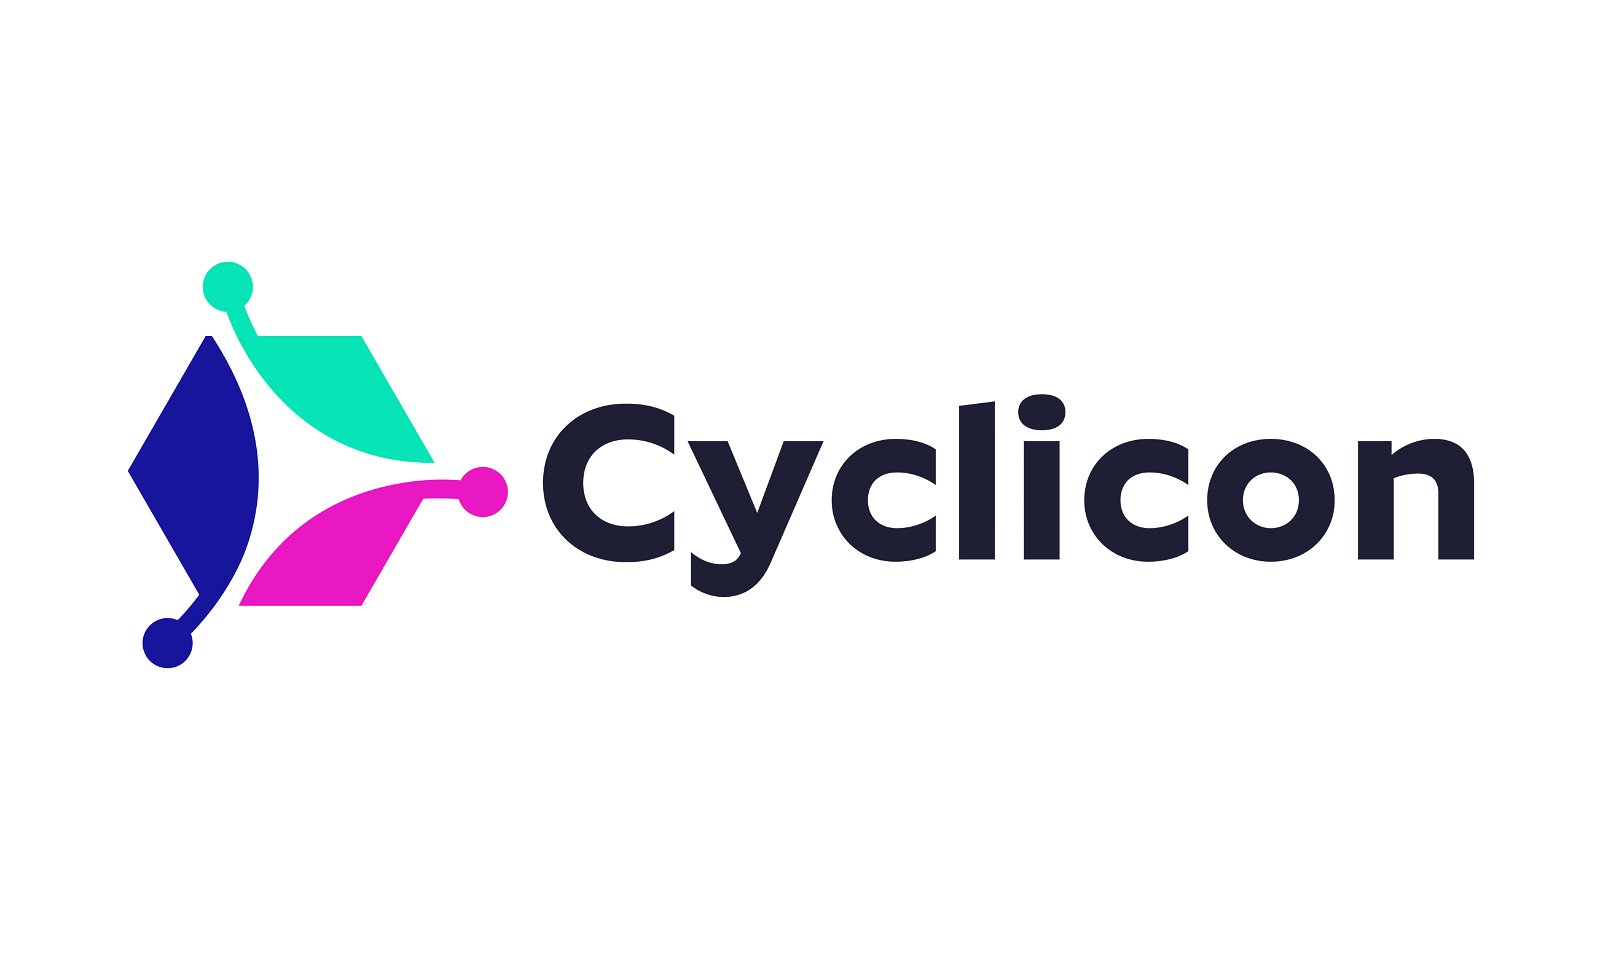 Cyclicon.com - Creative brandable domain for sale